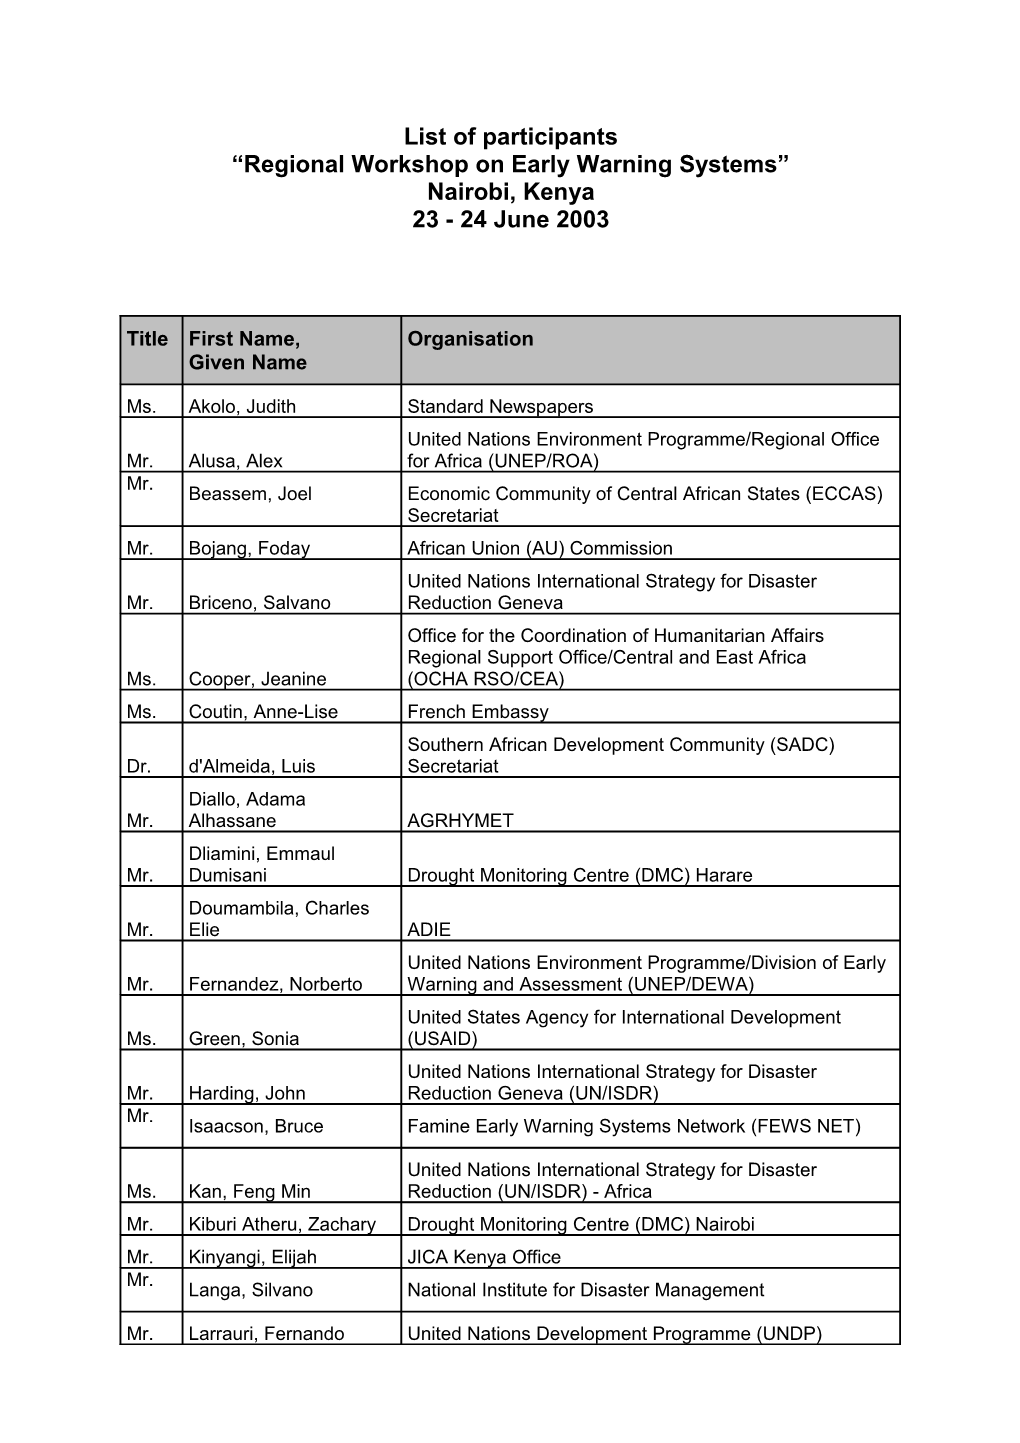 List of Participant